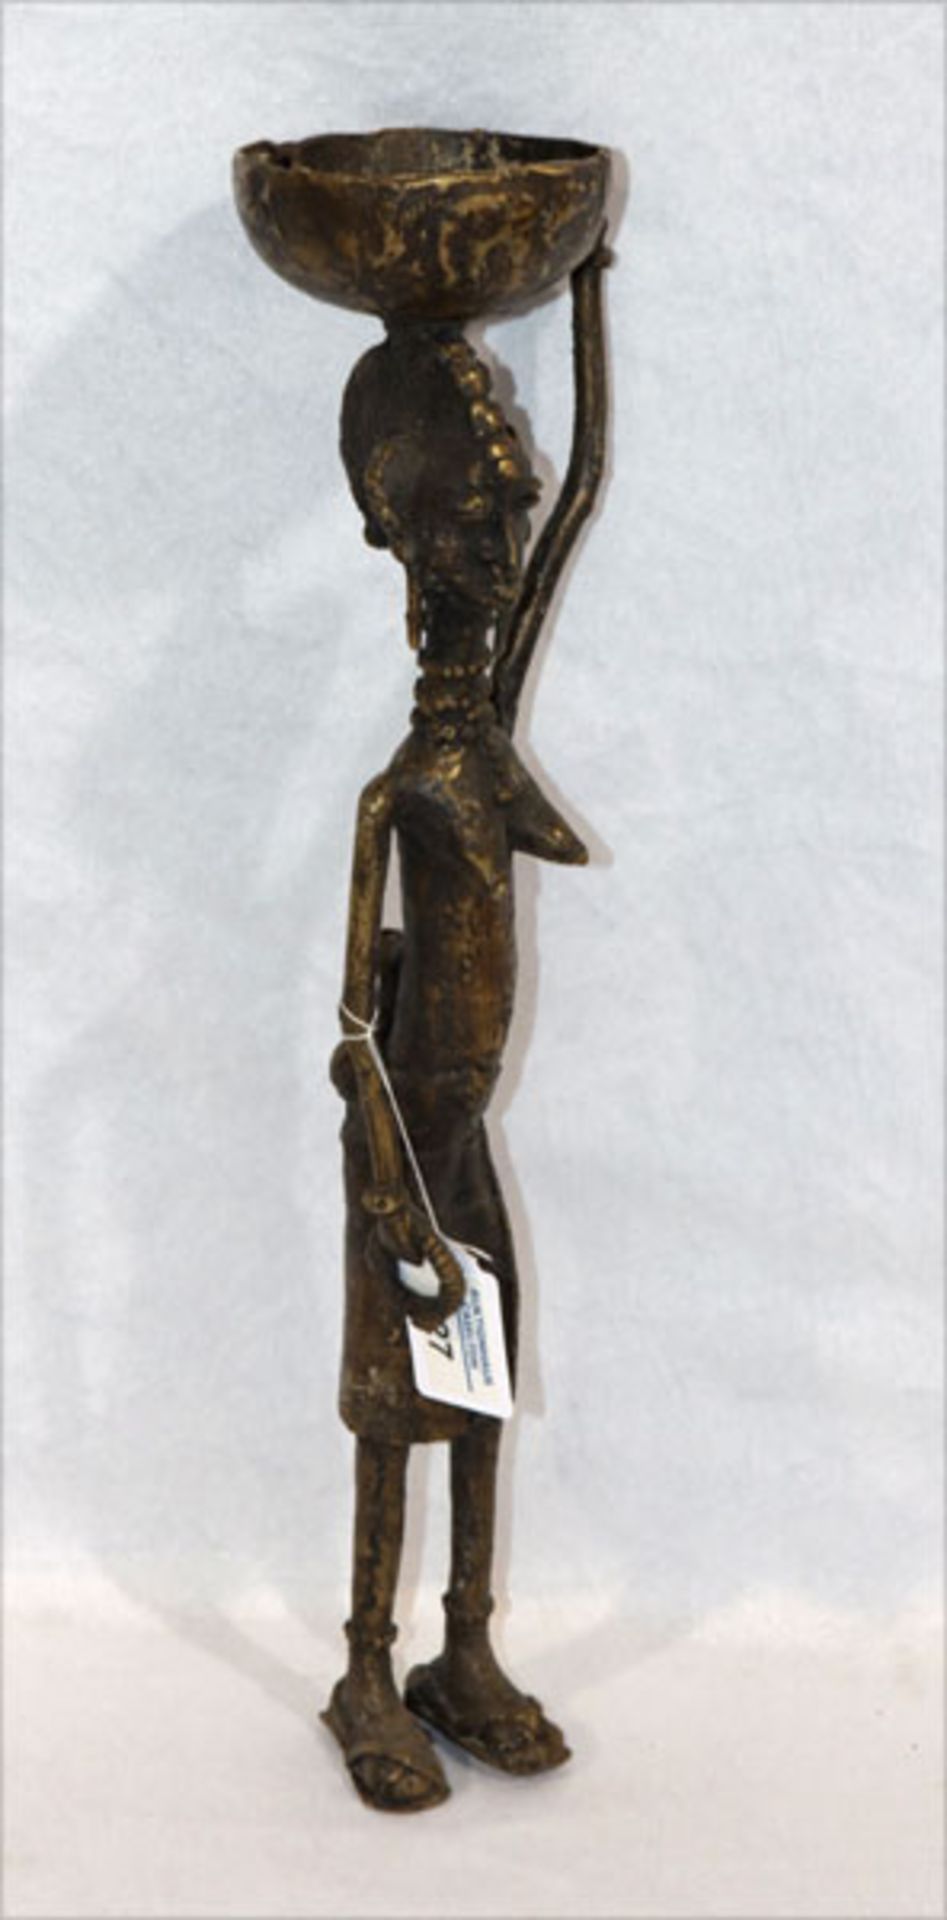 Metall Figurenskulptur 'Frau mit Korb', H 45 cm